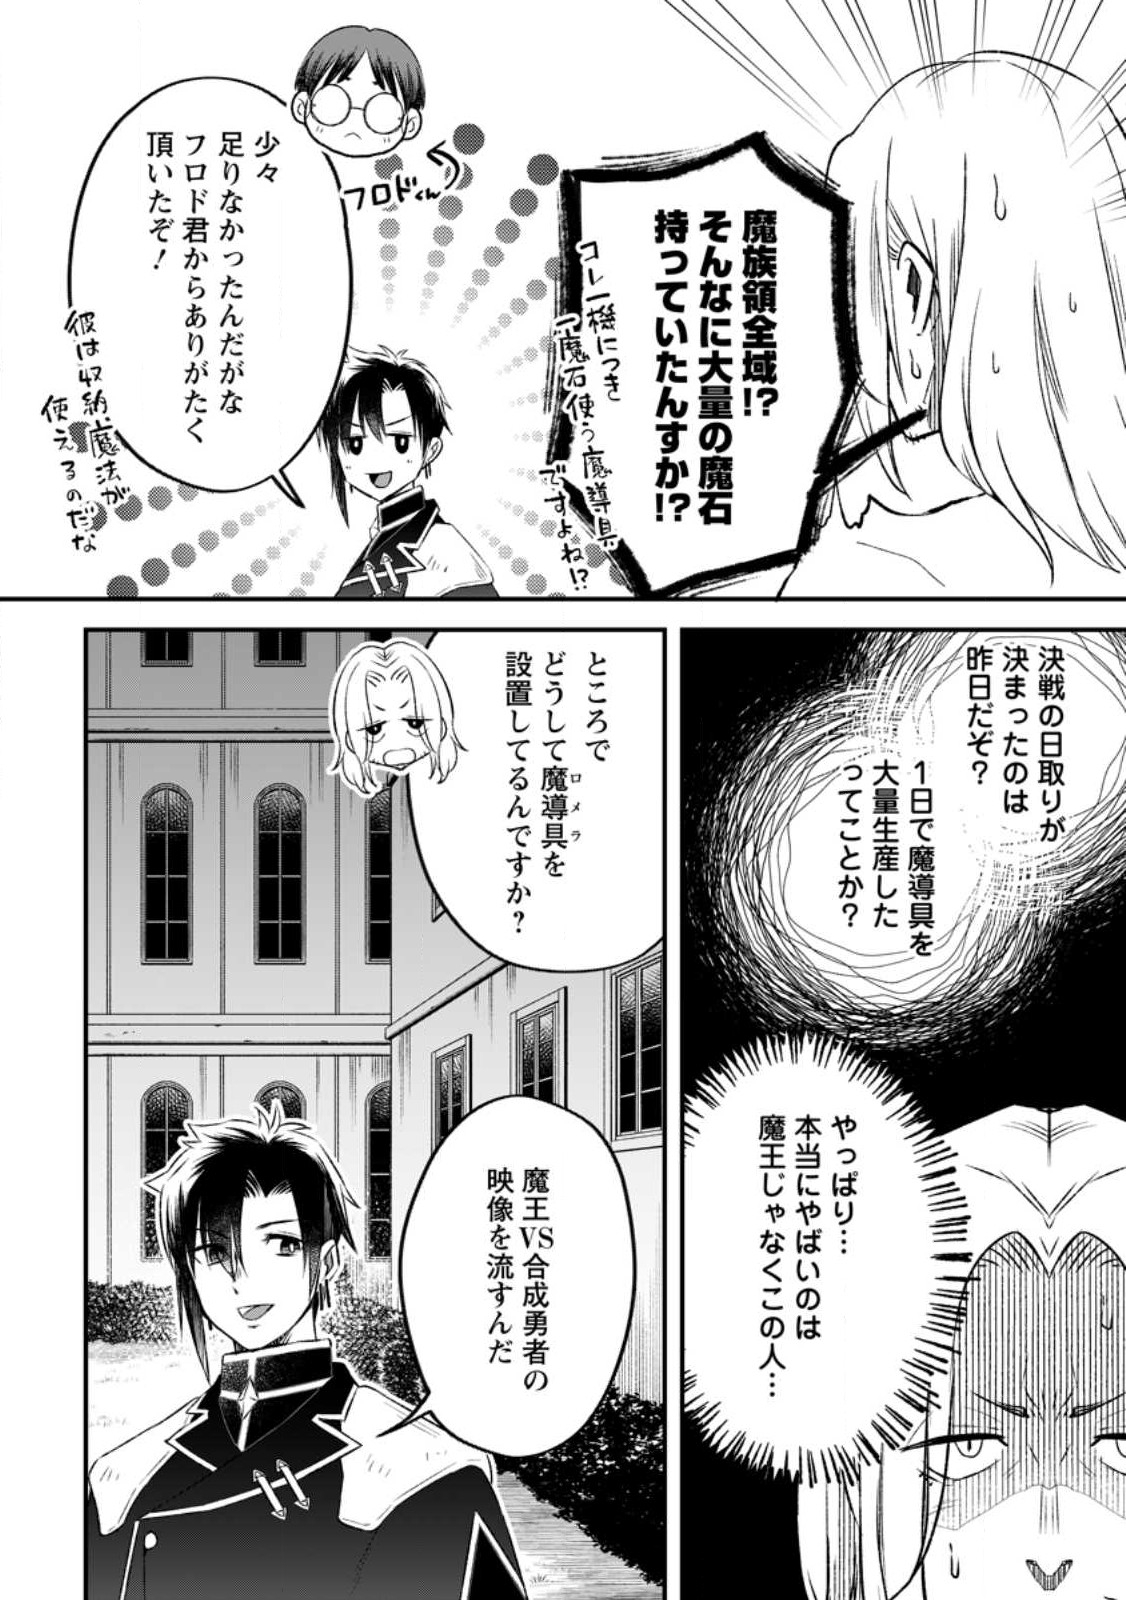 Yuusha Party wo Tsuihousareta no de, Maou wo Torikaeshi ga Tsukanai Hodo Tsuyoku Sodatete Mita - Chapter 12.1 - Page 2